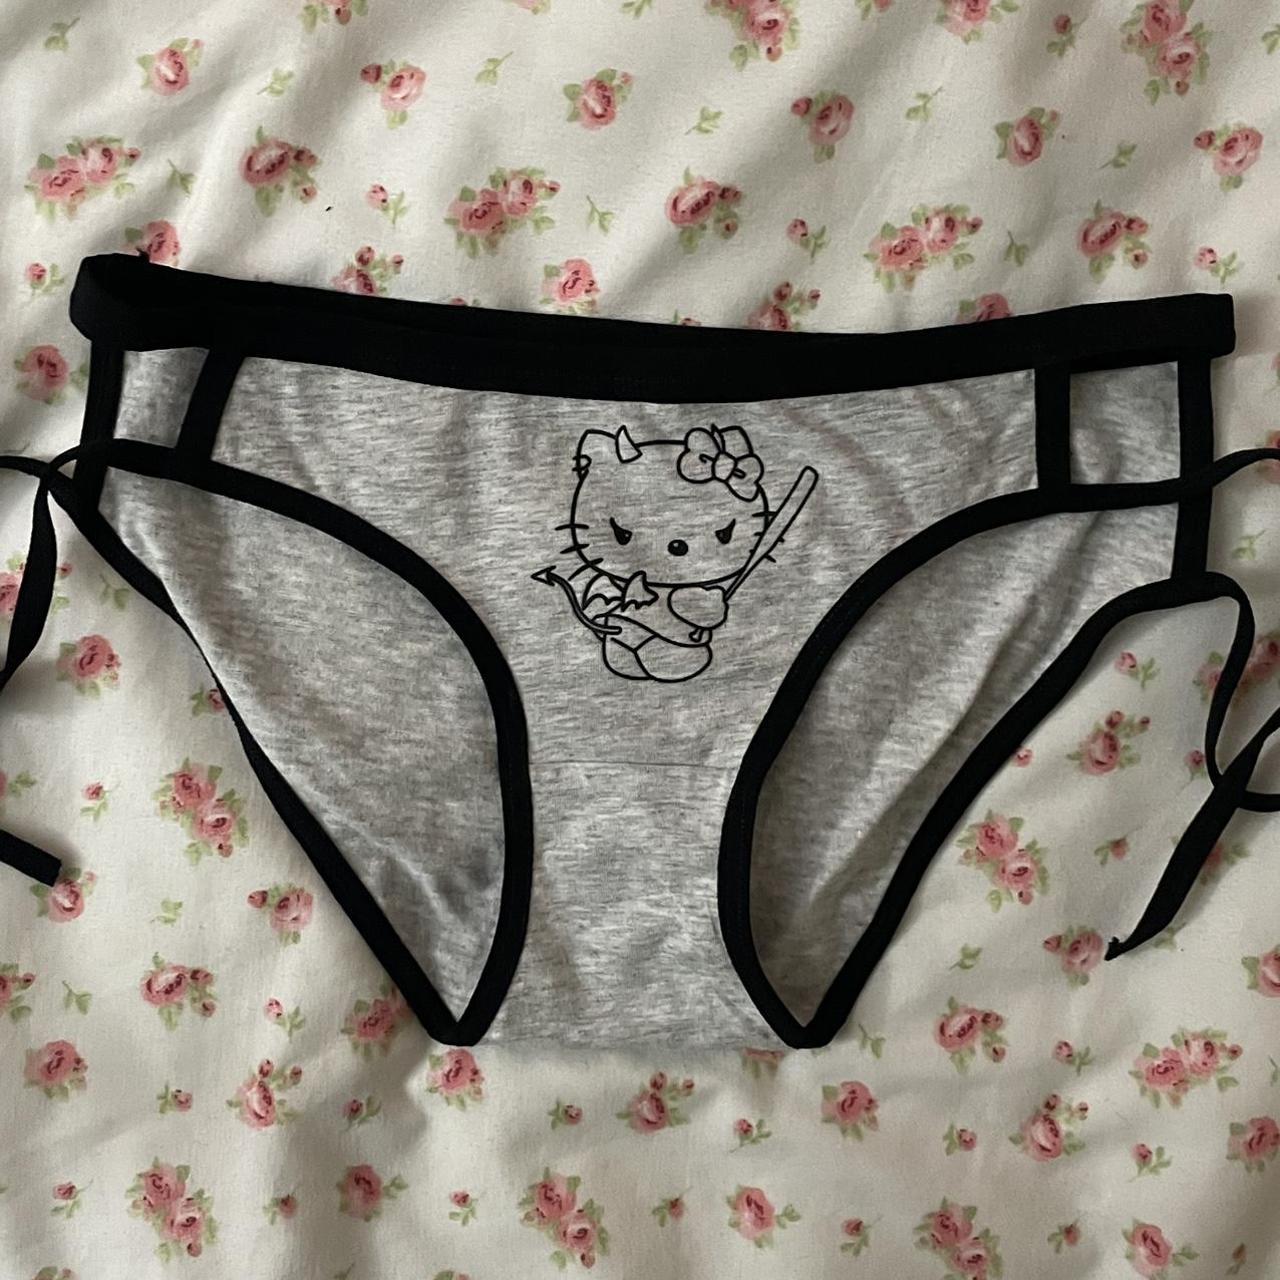 hello kitty devil underwear -not worn fits best - Depop